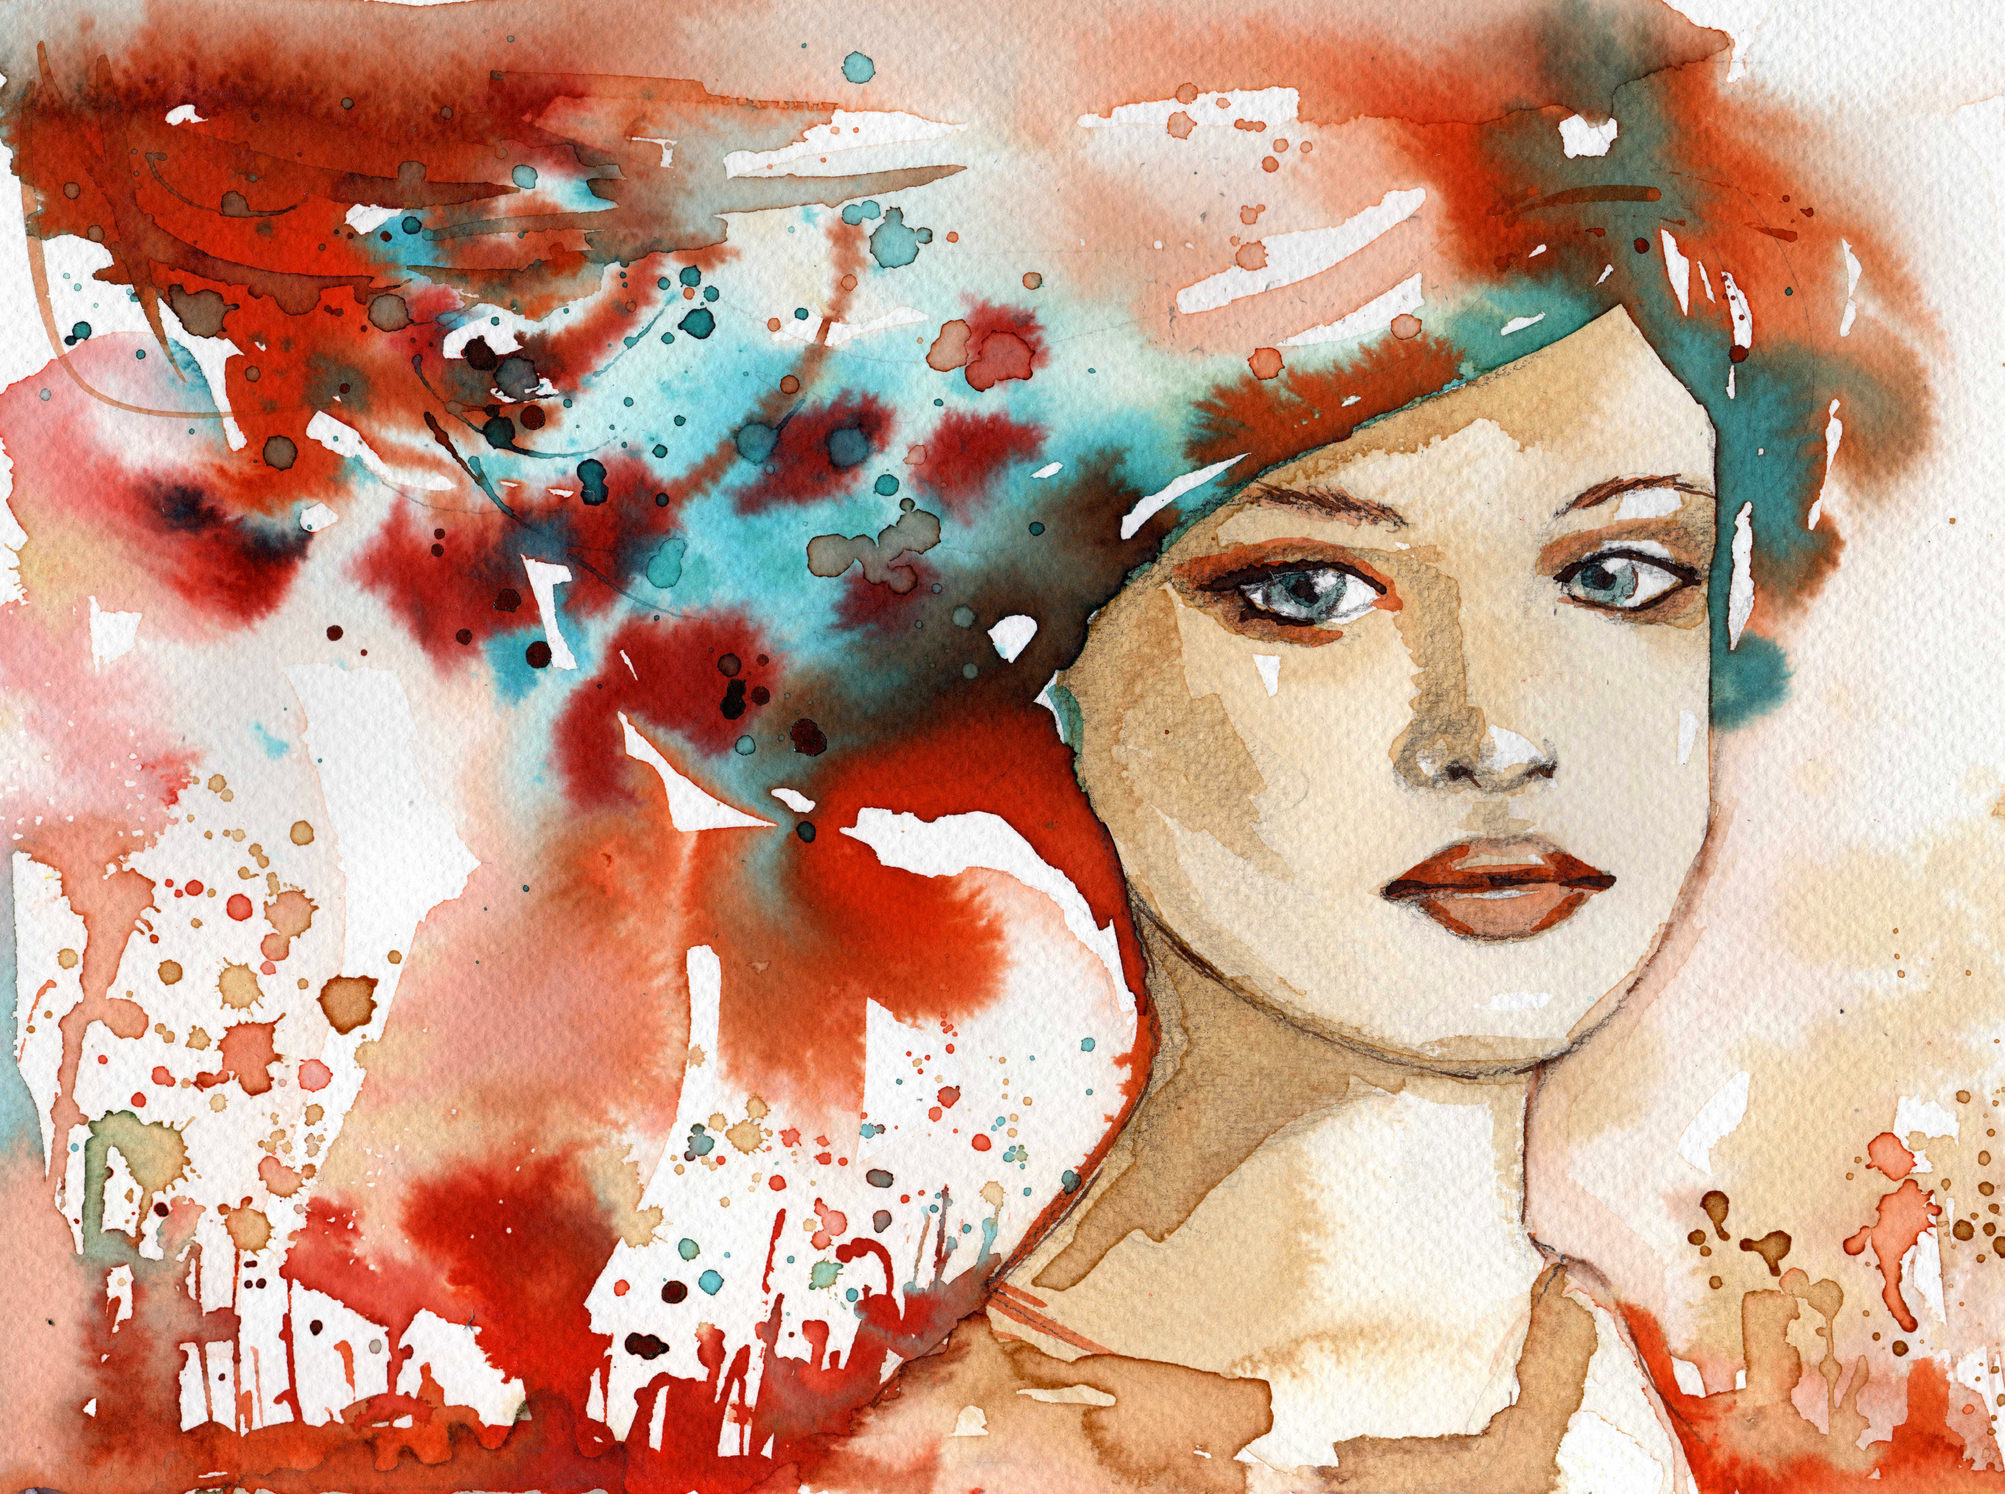  ilustratie cu o femeie care priveste fix in fata, iar in partea de sus a capului are linii si flori pictate in diverse culori